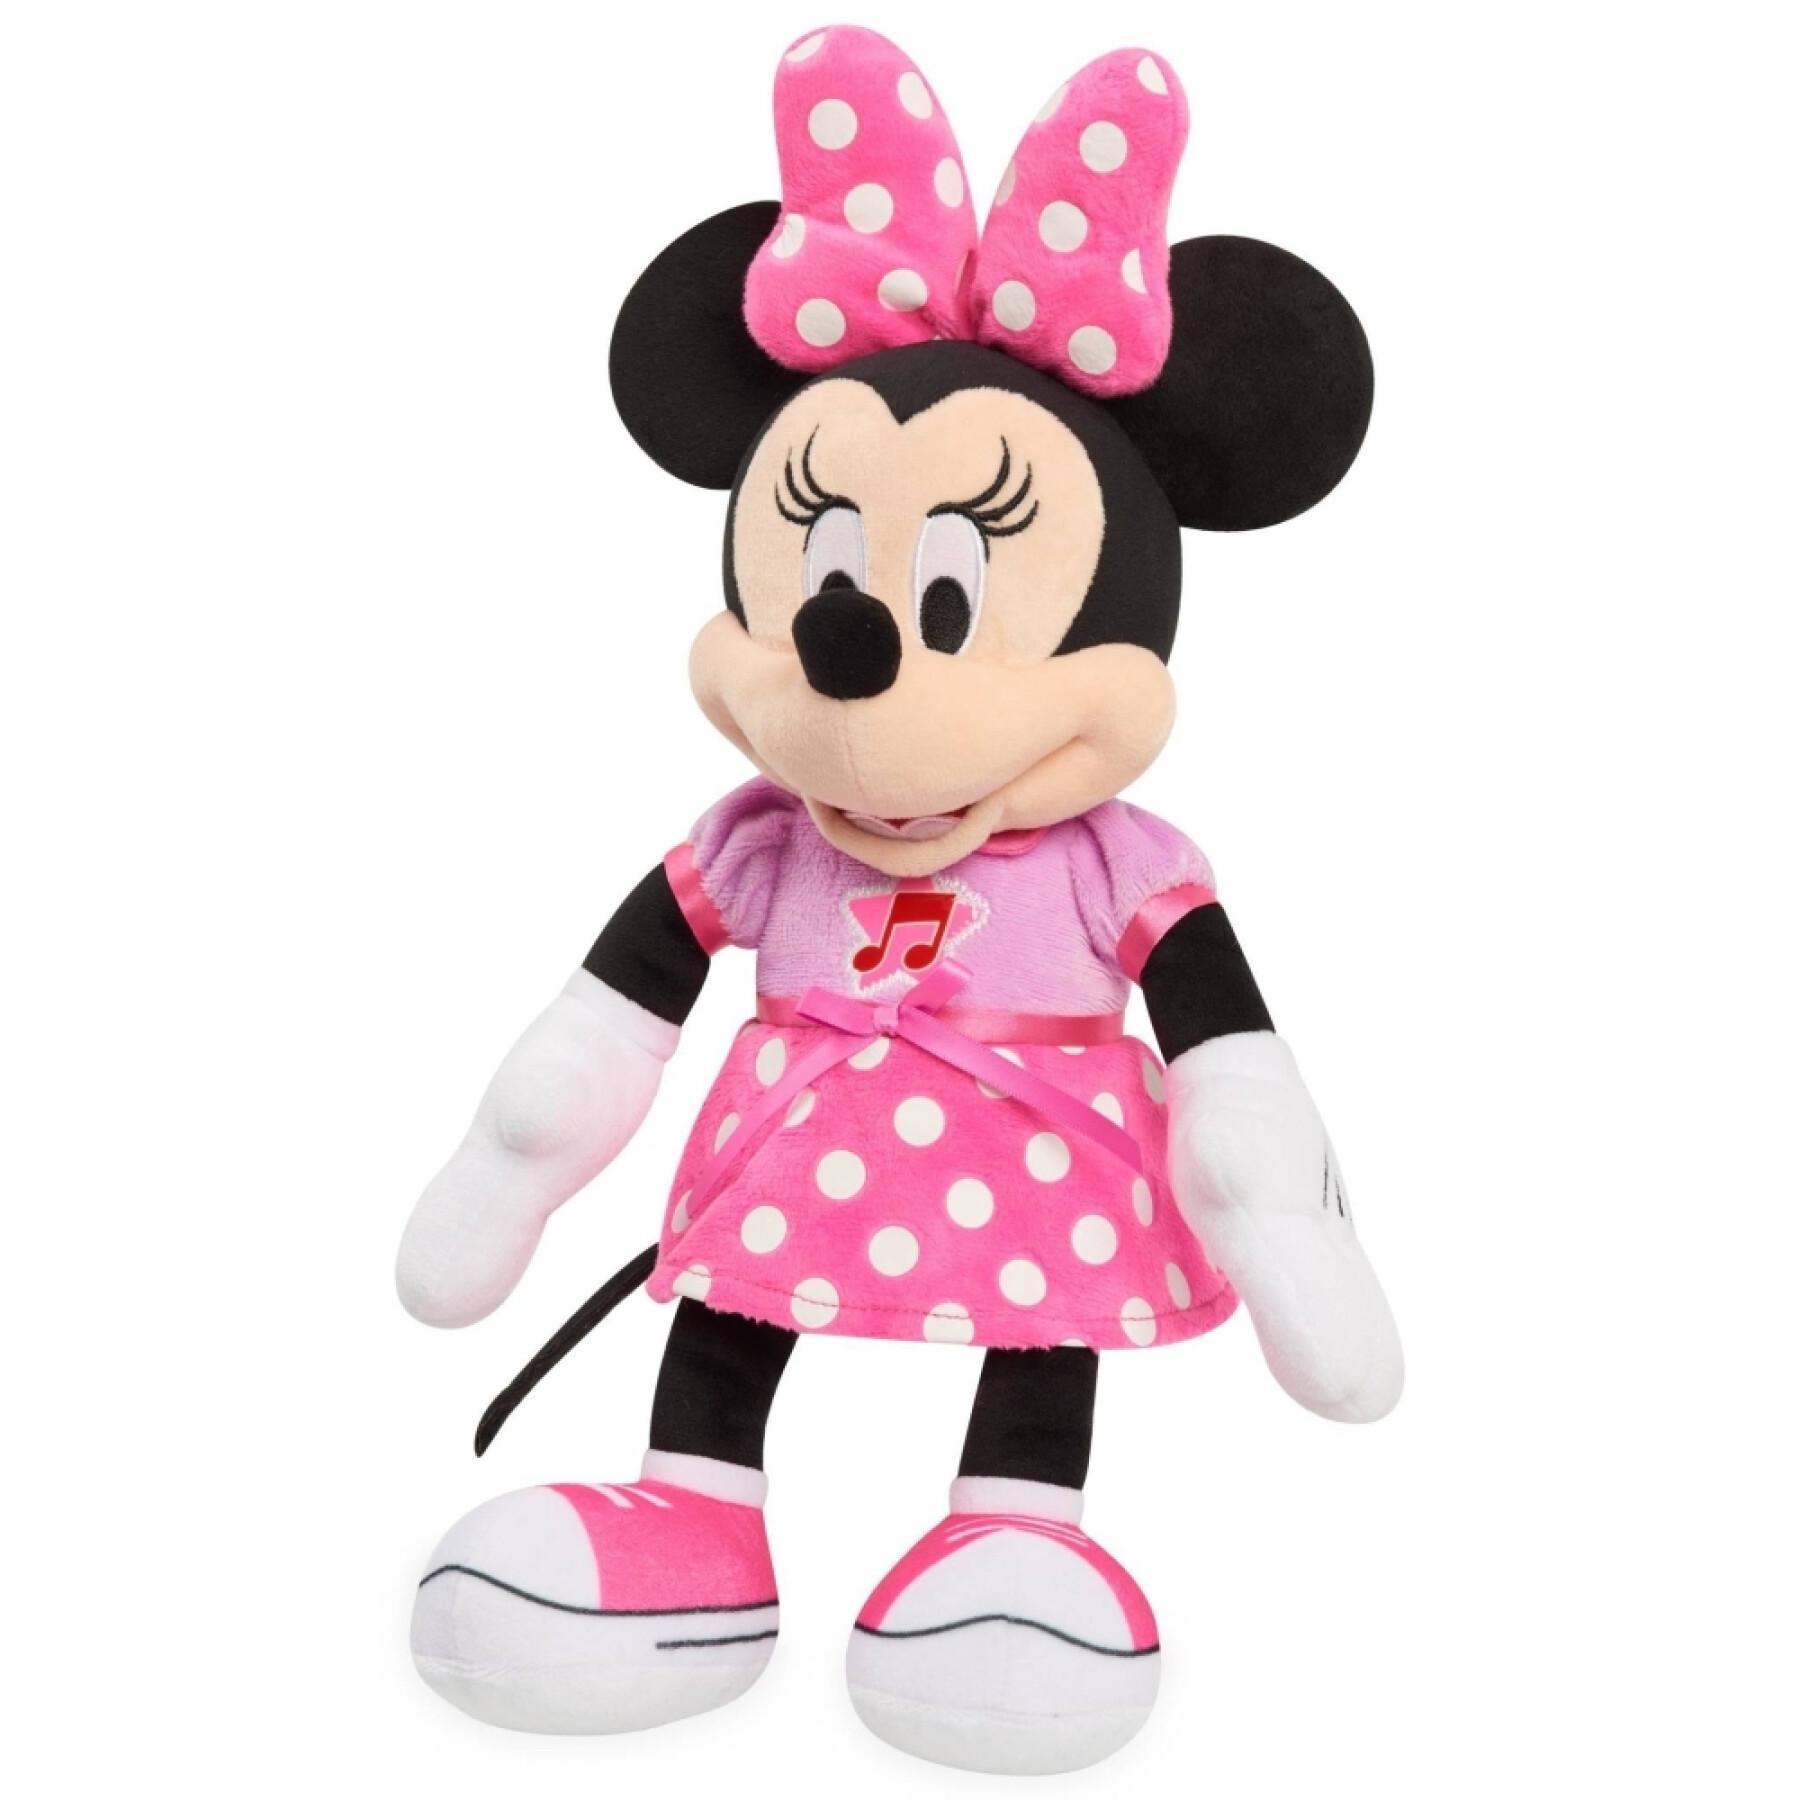 Musical plush Disney Minnie